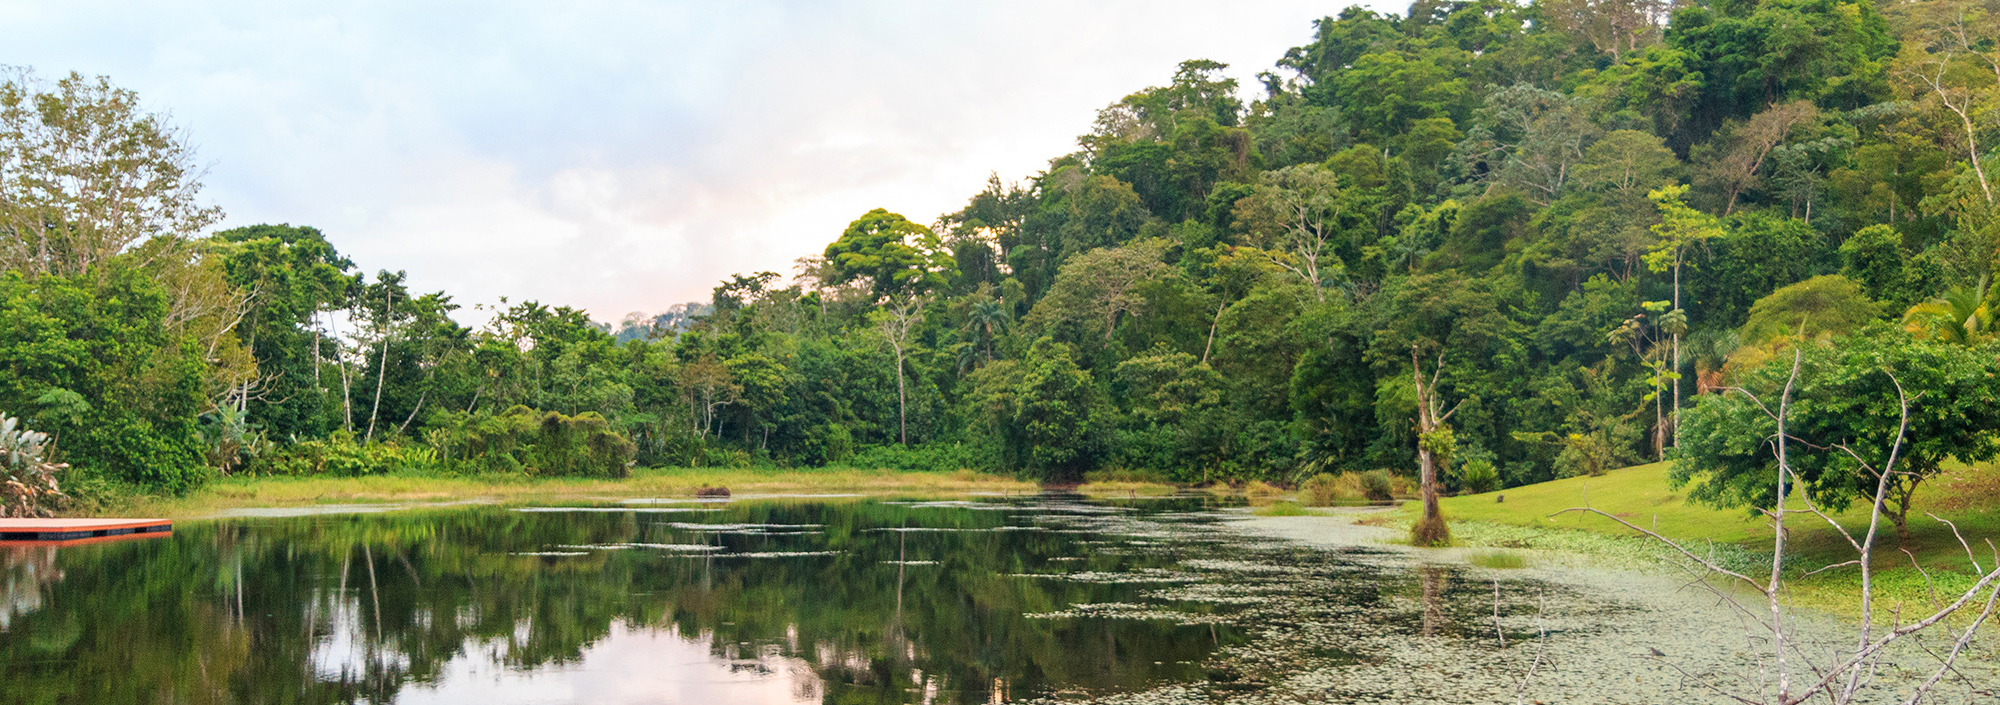 Lagunen im Maquenque Gebiet im Norden Costa Ricas